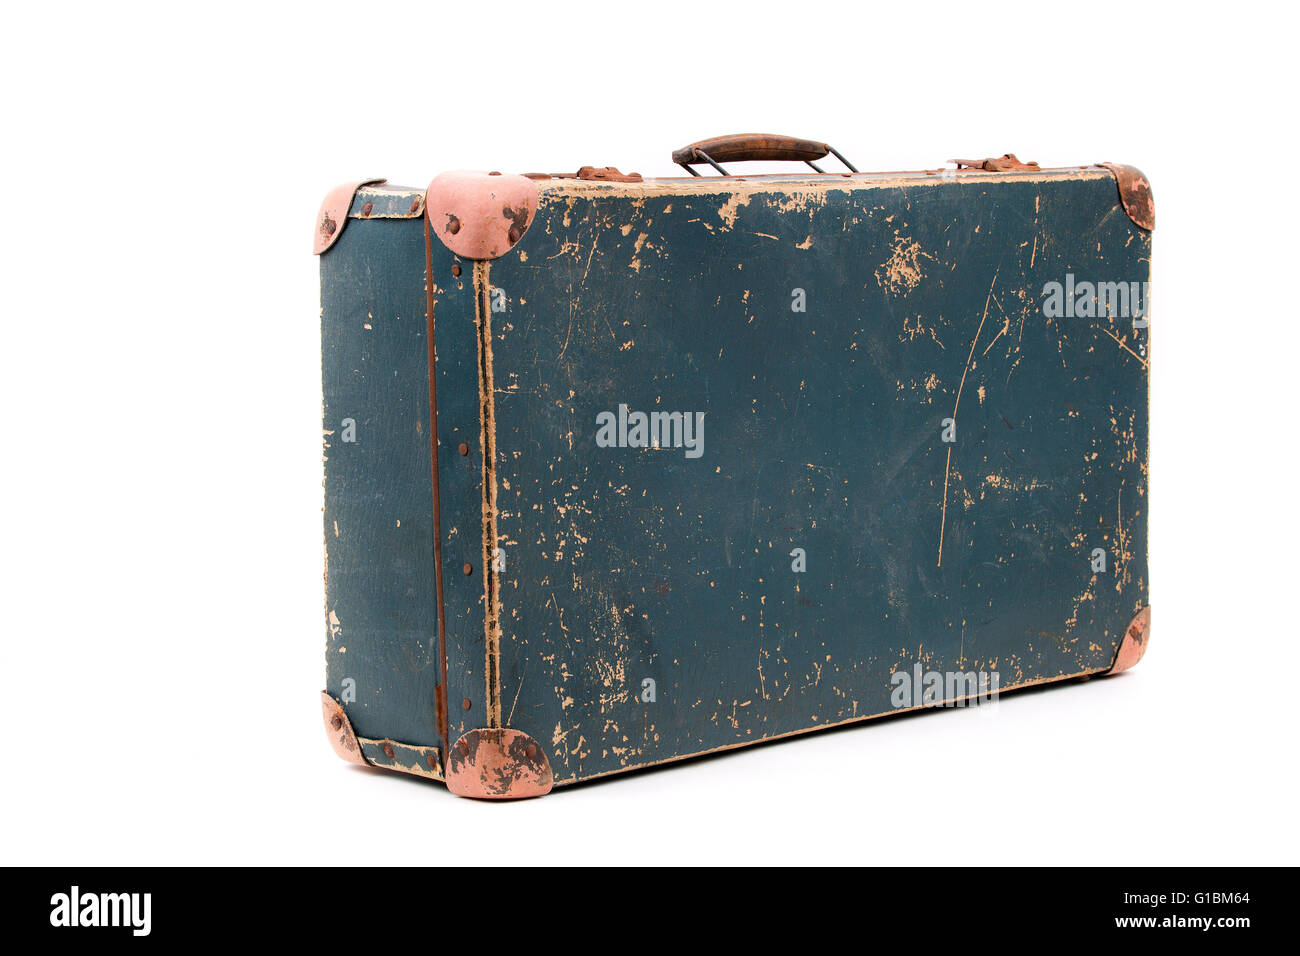 Alter Koffer auf weißem Hintergrund Stockfoto